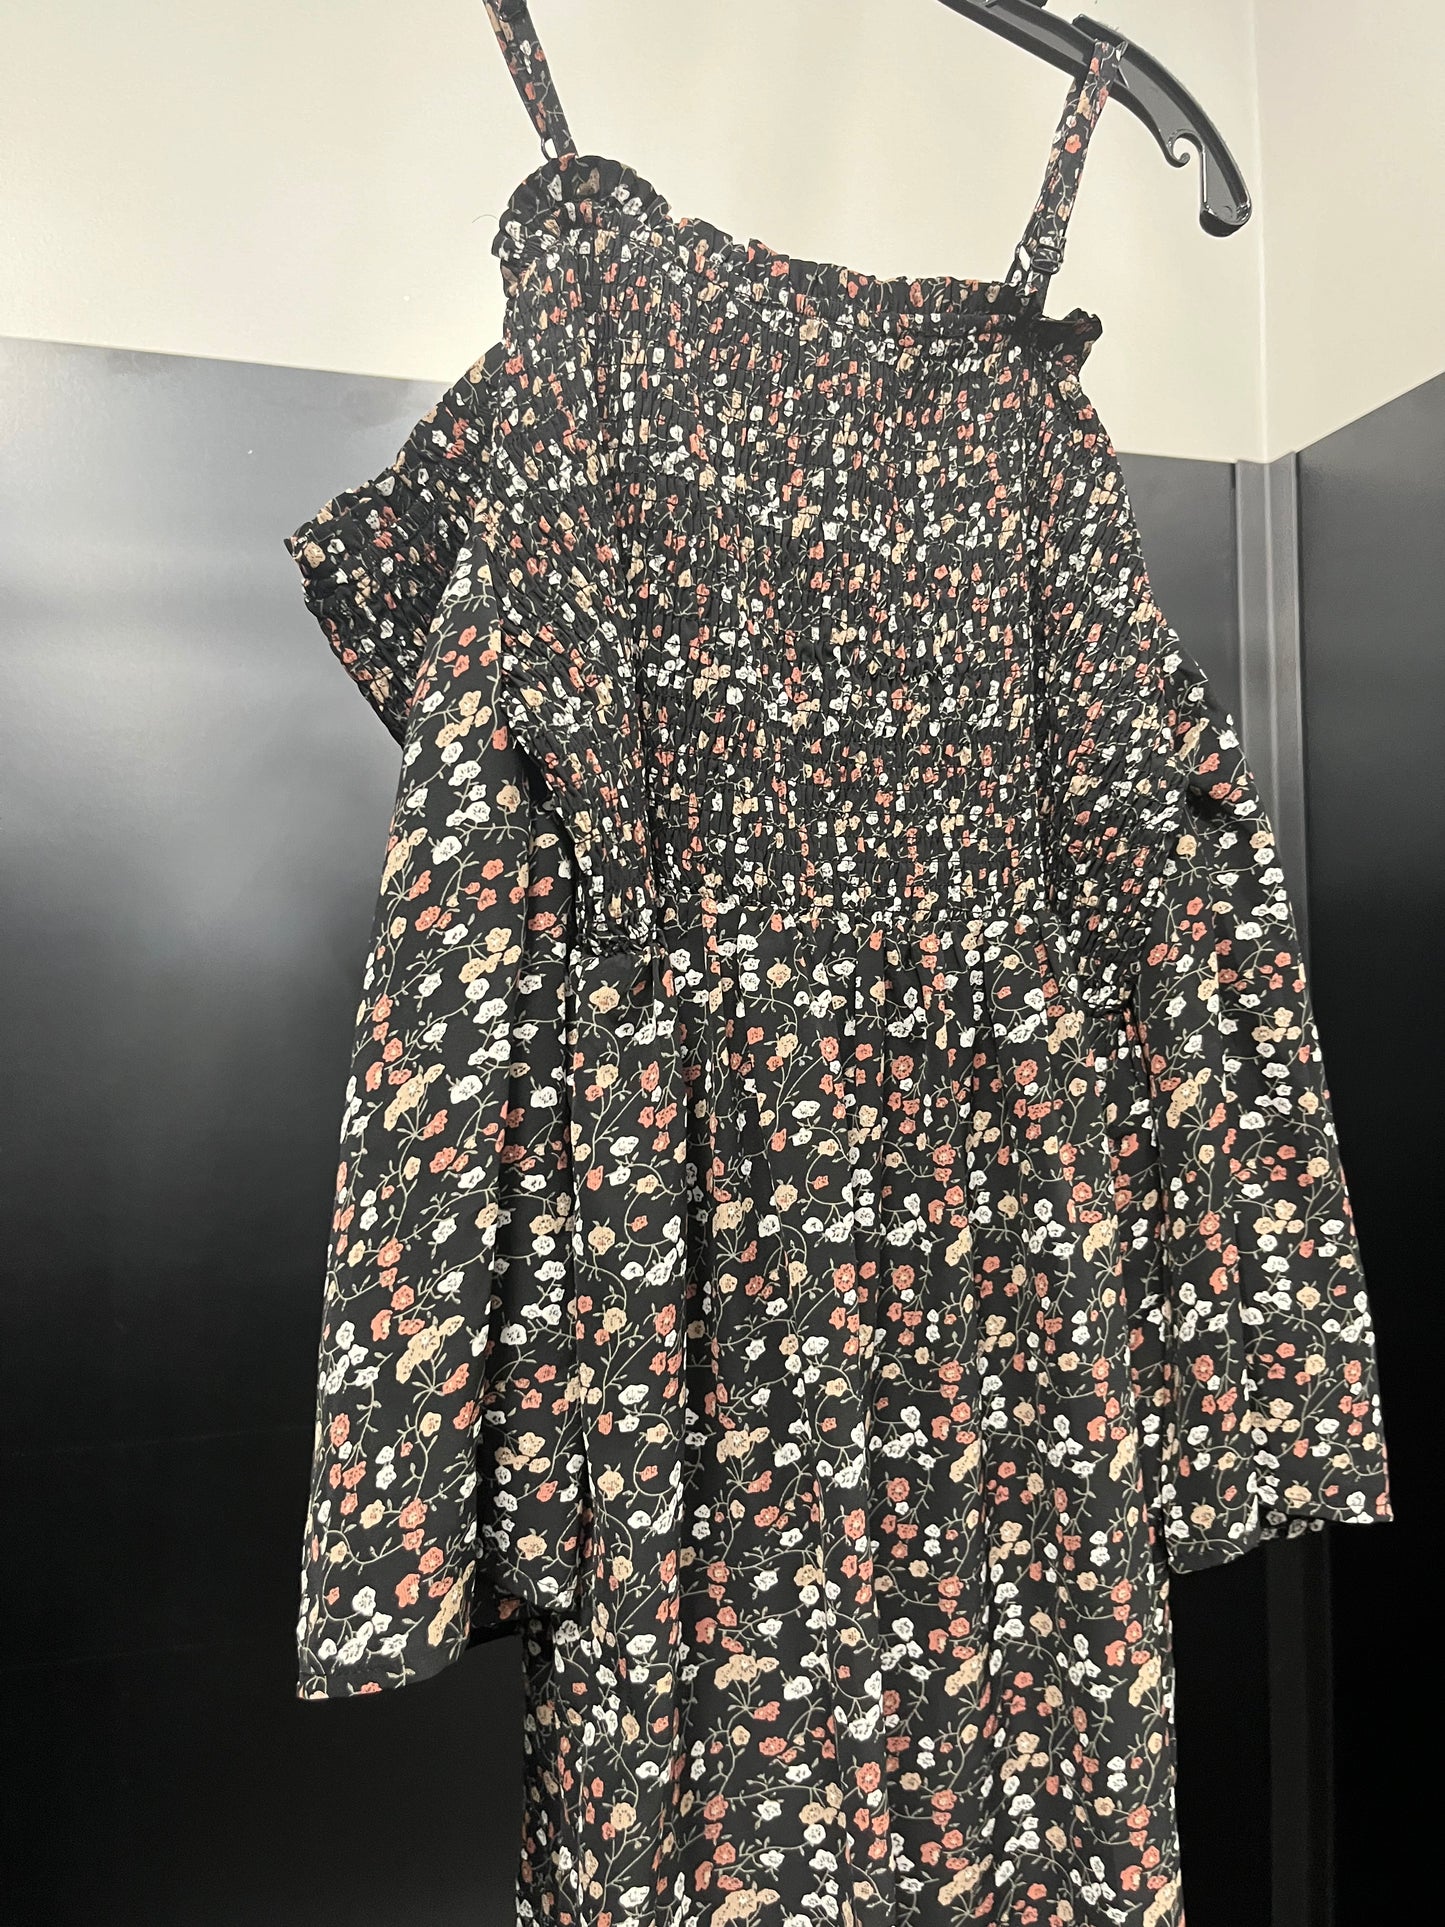 Dress Casual Maxi By Zenobia  Size: 3x